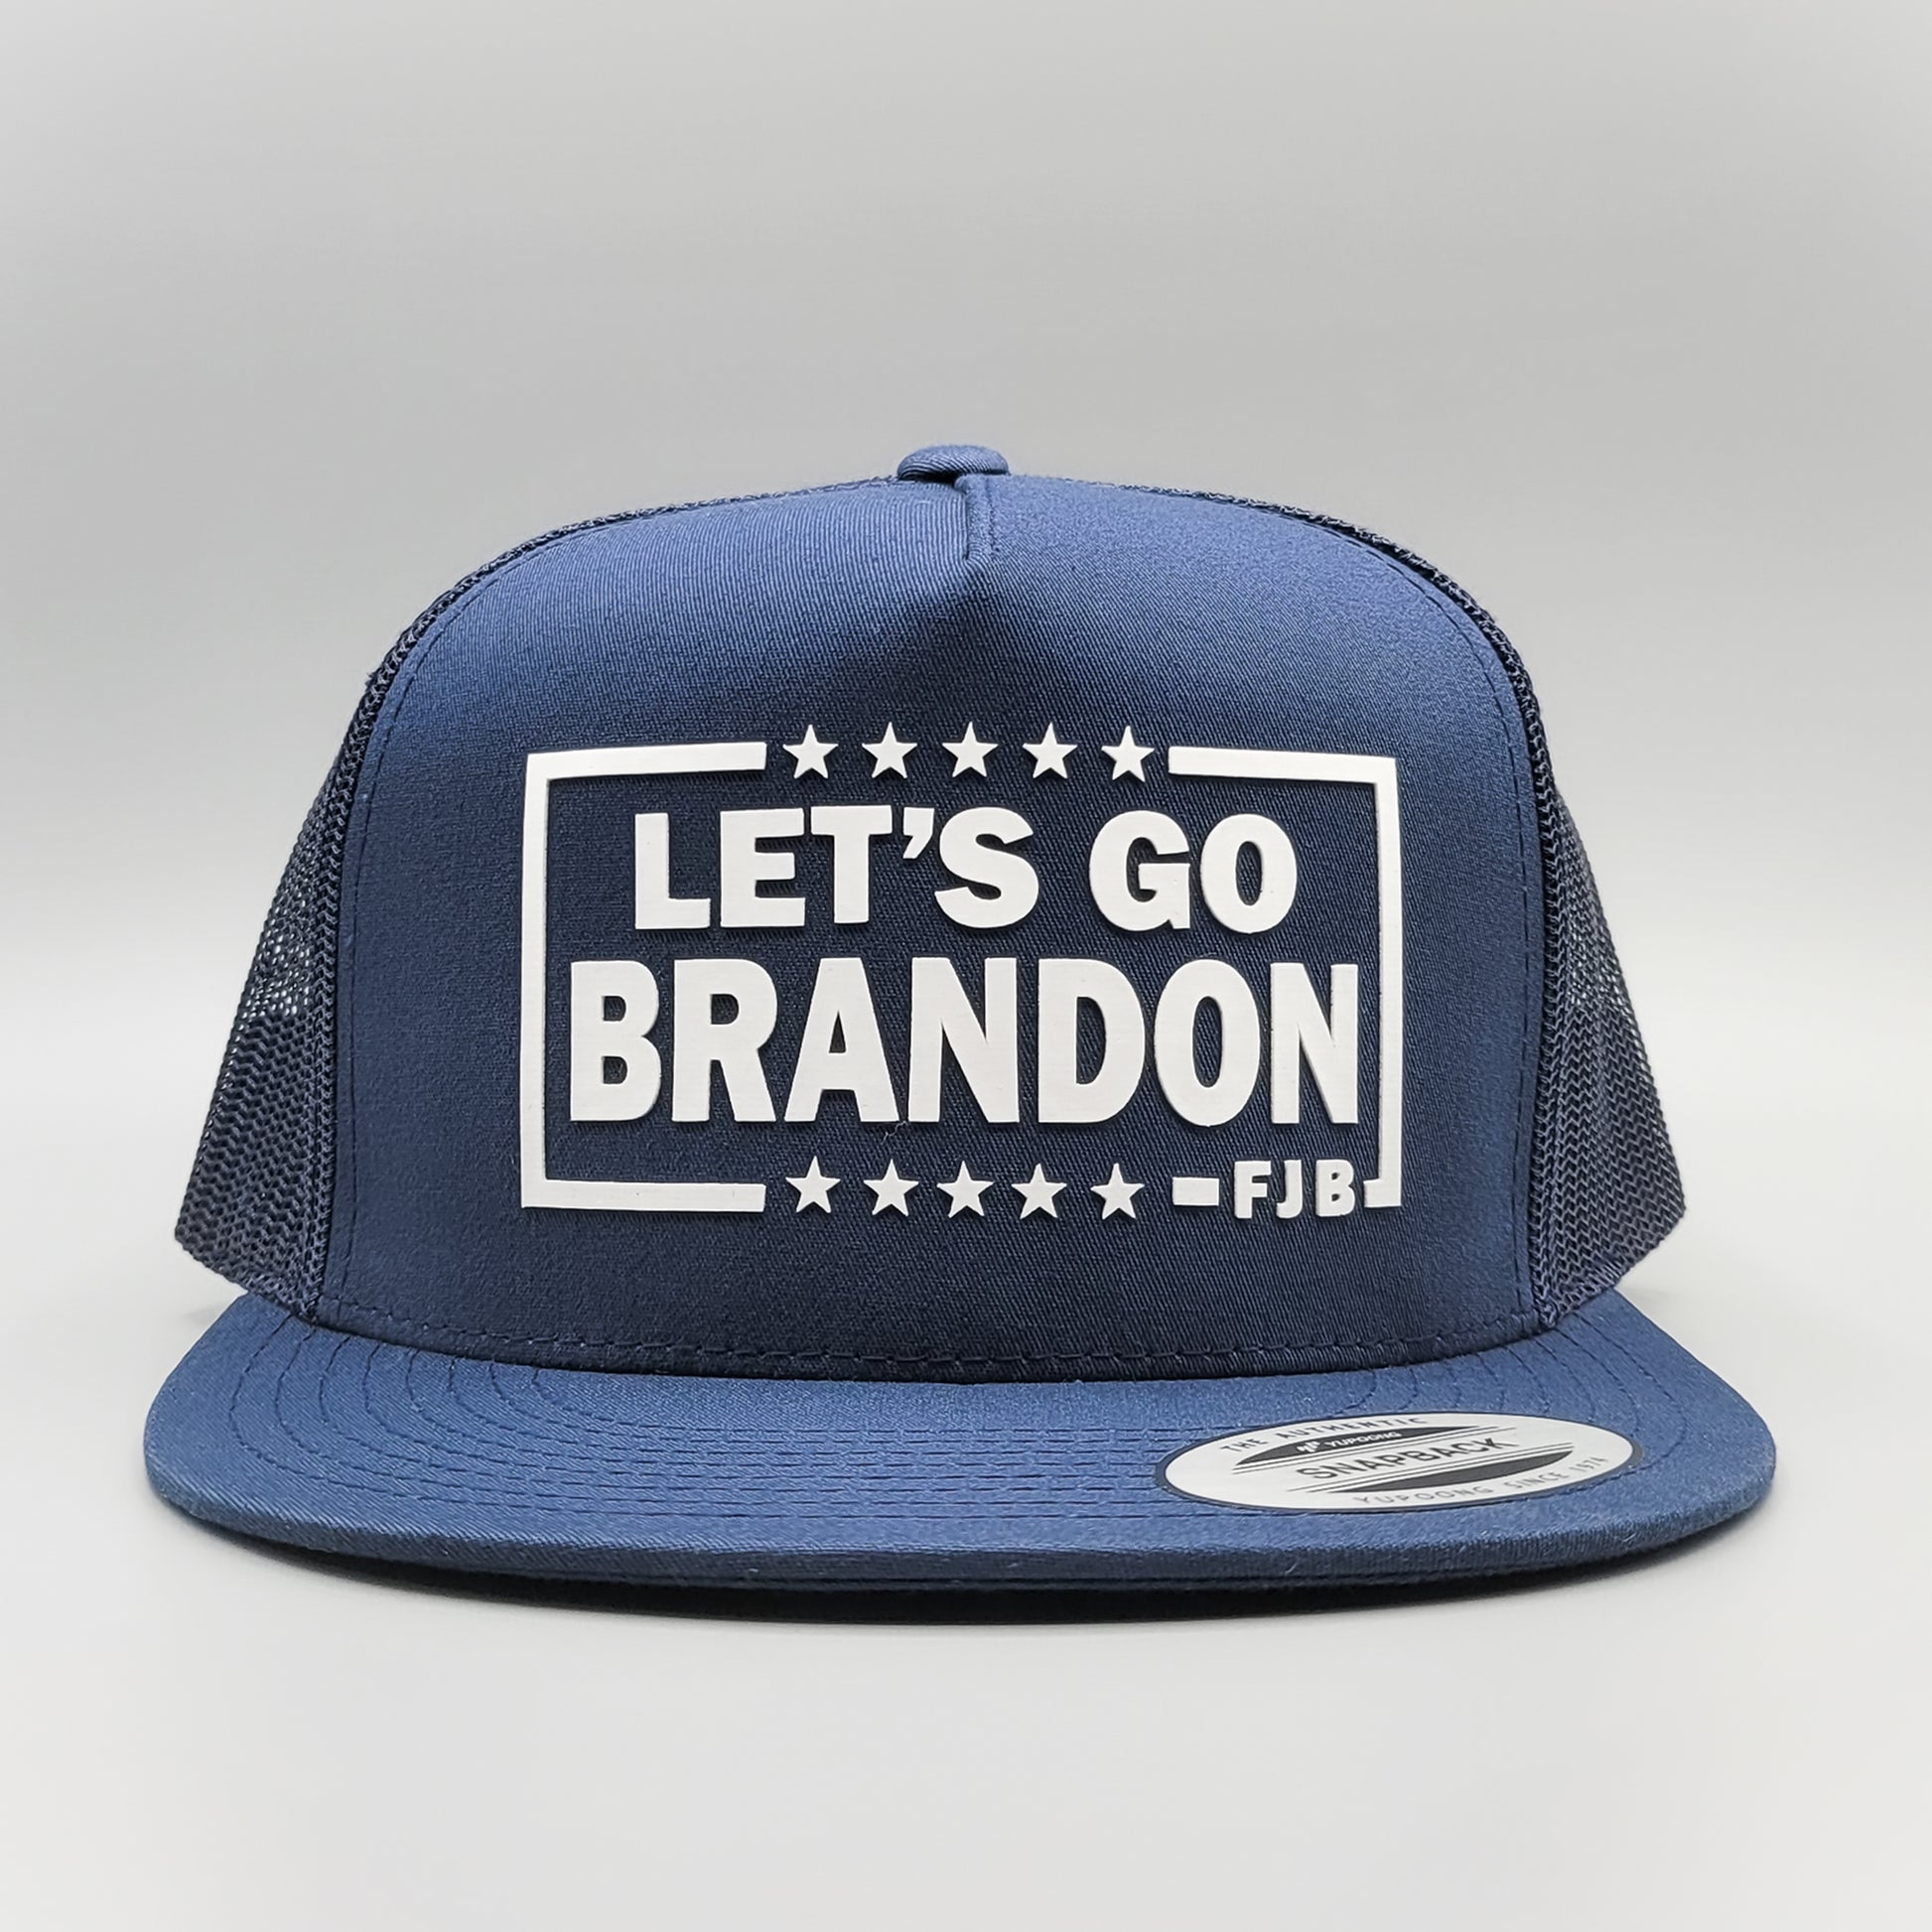 Let's go Brandon FJB Hats